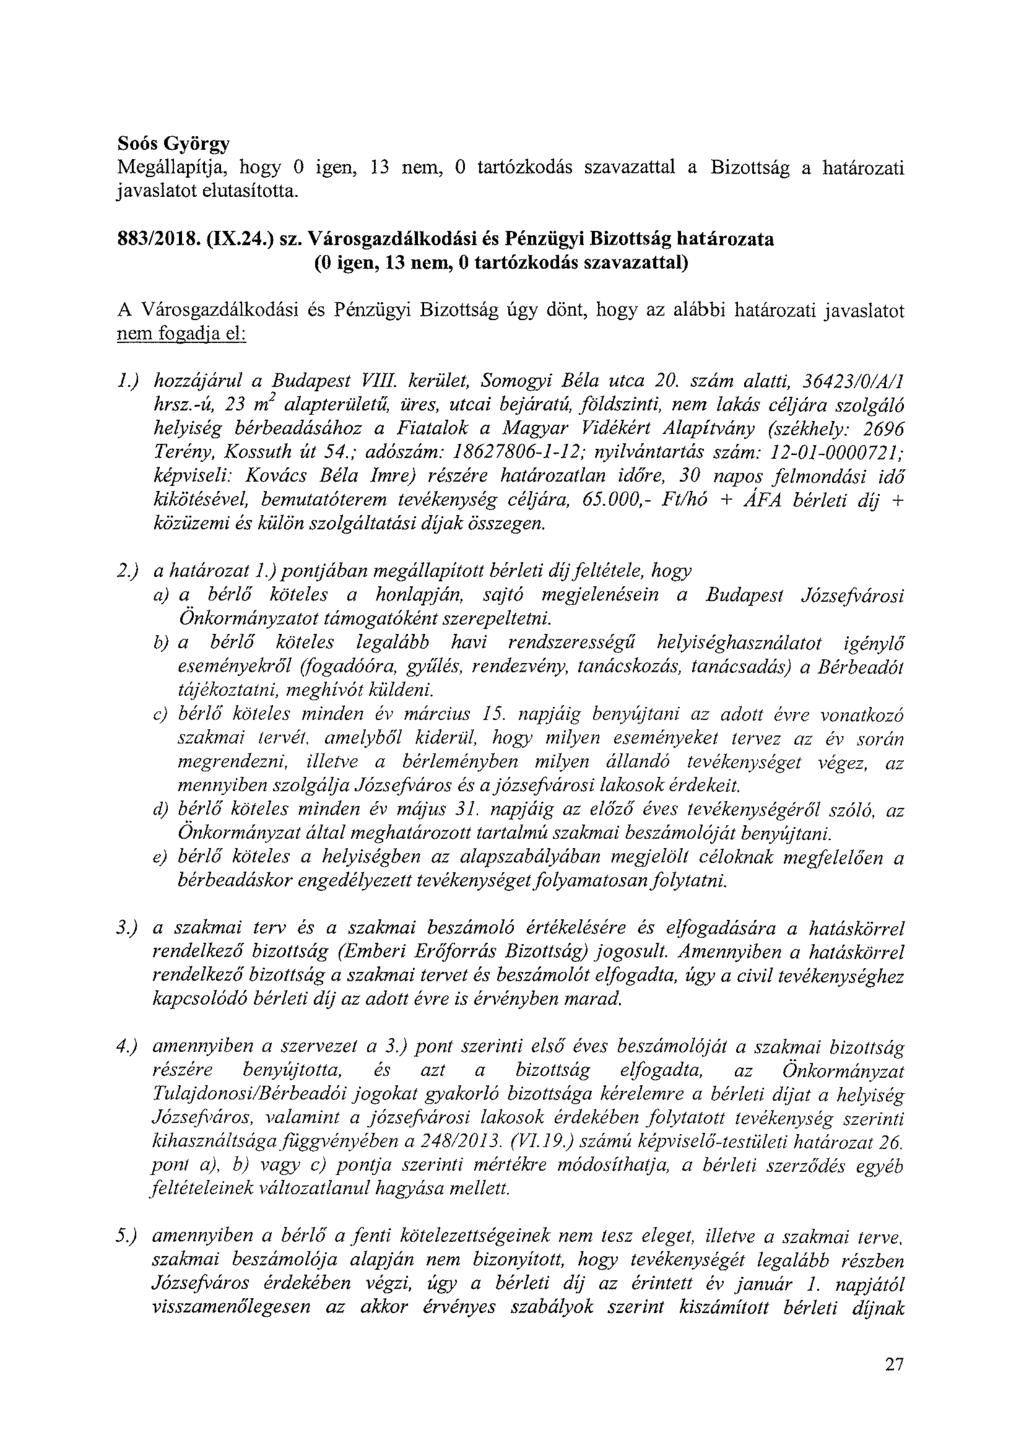 Sons György Megállapítja, hogy 0 igen, 13 nem, 0 tartózkodás szavazattal a Bizottság a határozati javaslatot elutasította. 883/2018. (IX.24.) sz.